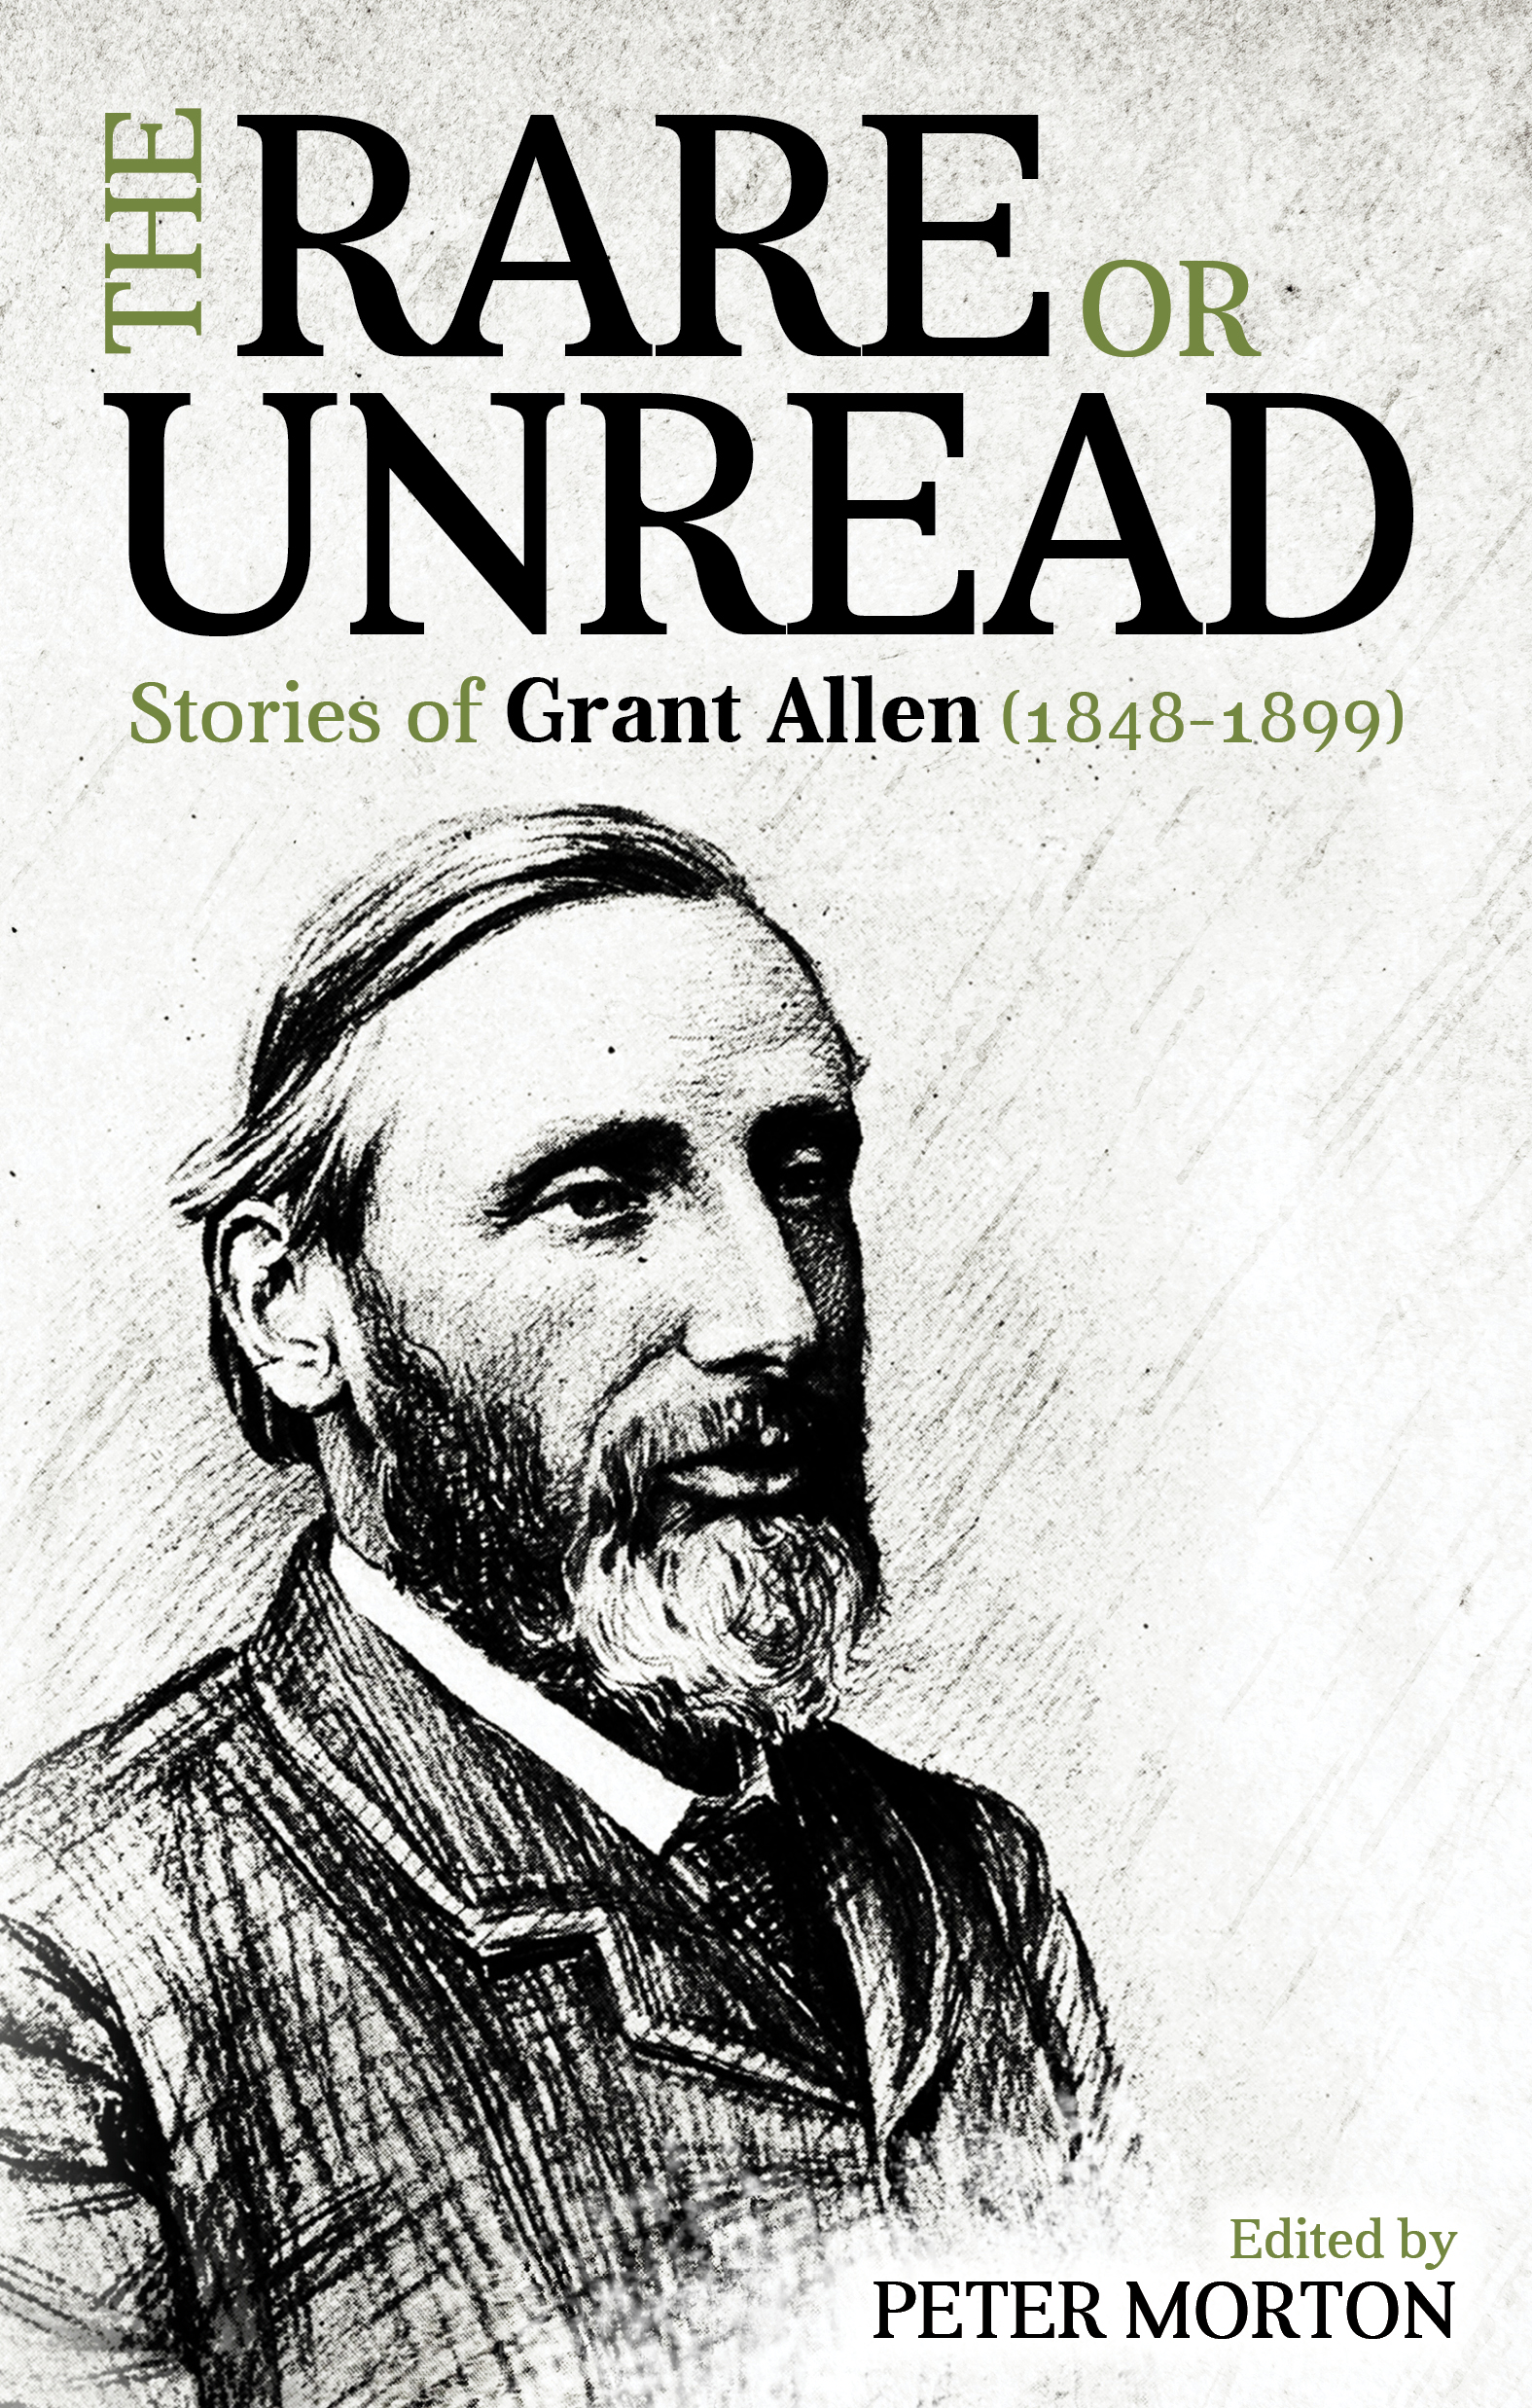 The Rare or Unread - Grant Allen - eBook.jpg